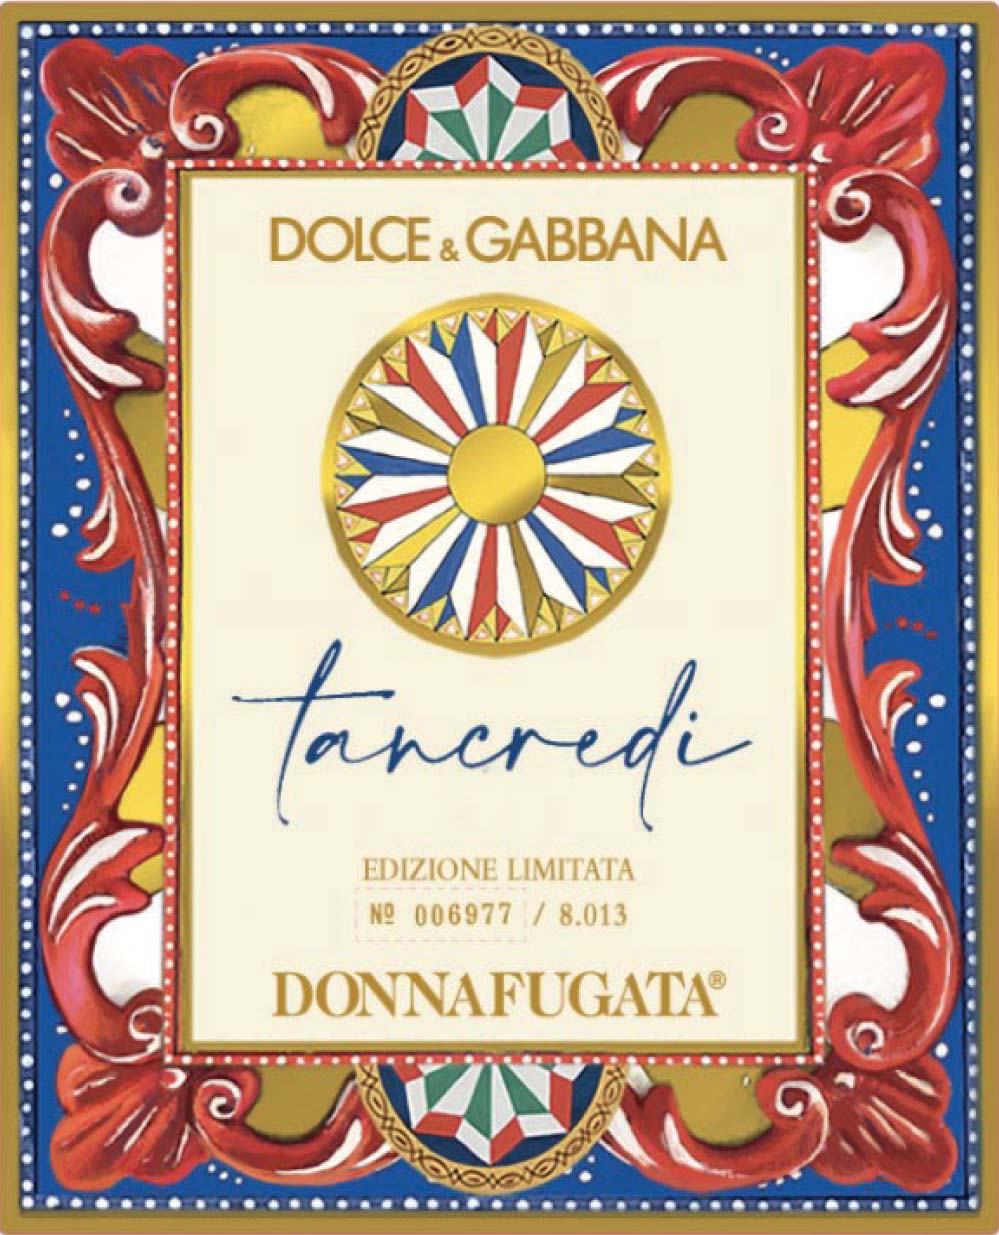 Donnafugata - Tancredi Dolce Gabbana label